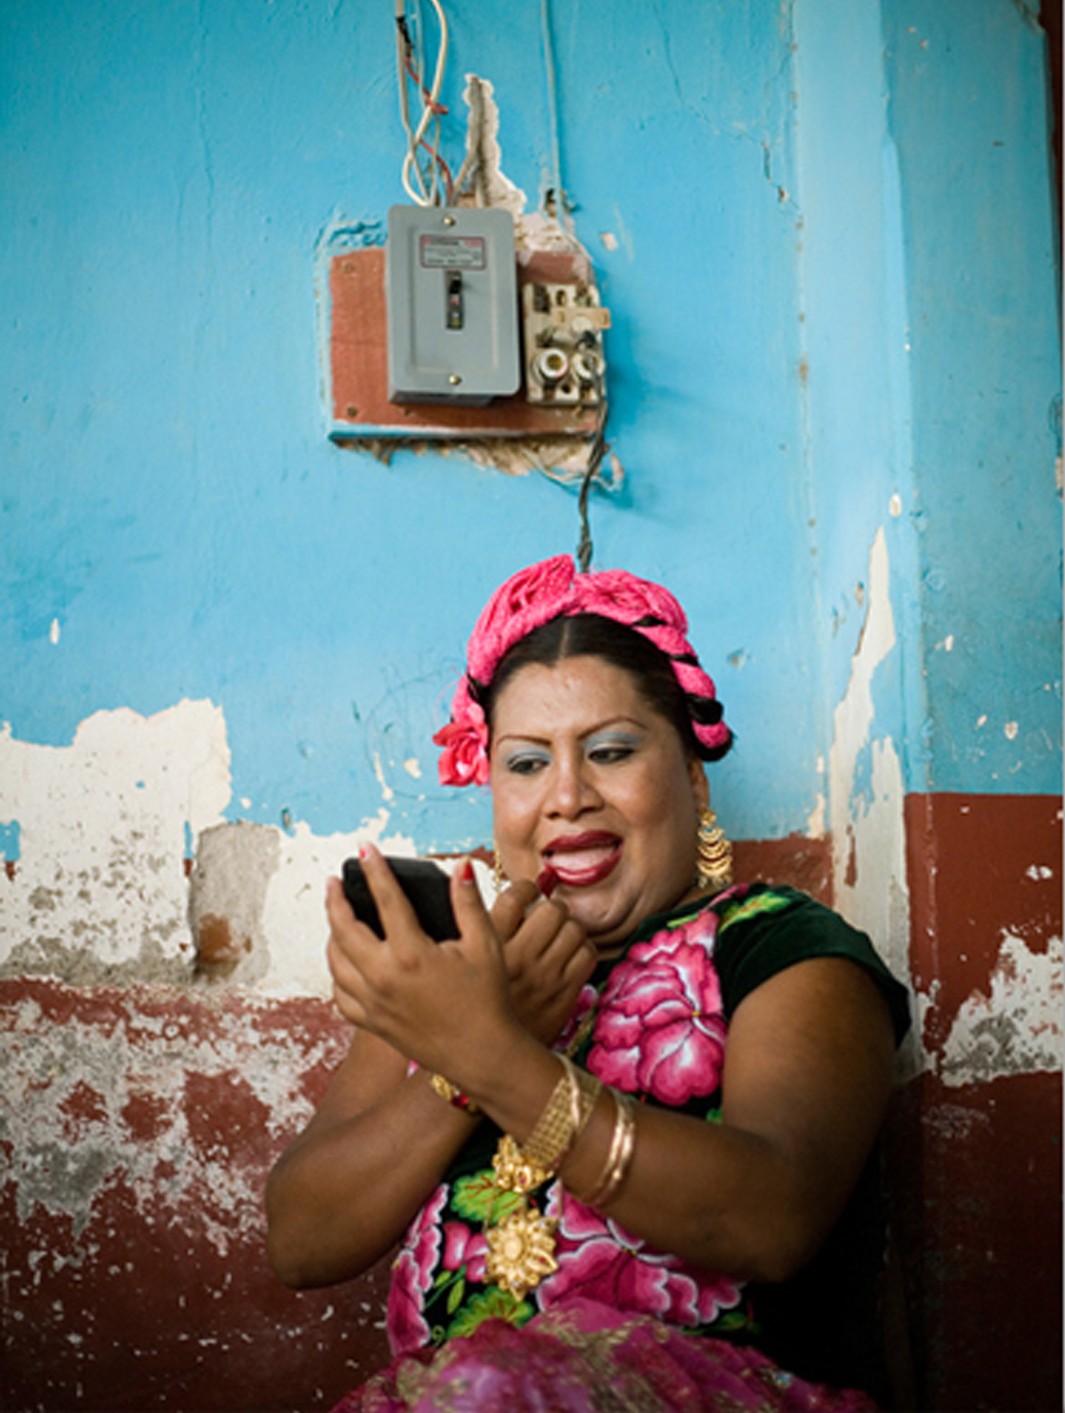 Η συγκρότηση της έμφυλης ταυτότητας στο χώρο της πόλης: η περίπτωση των muxes στο Μεξικό